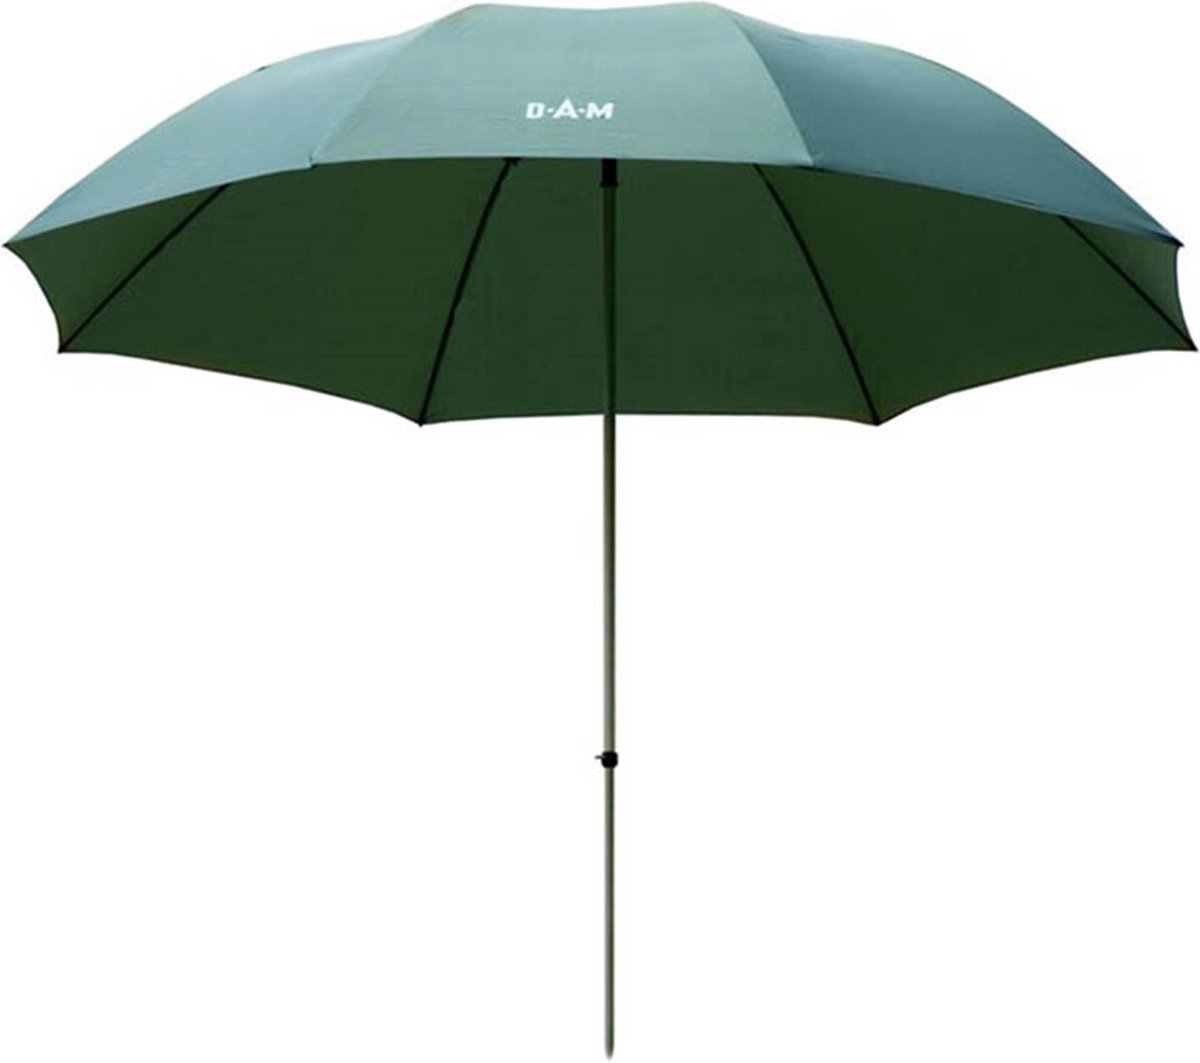 Parapluie DAM Iconic Umbrella 2.30m